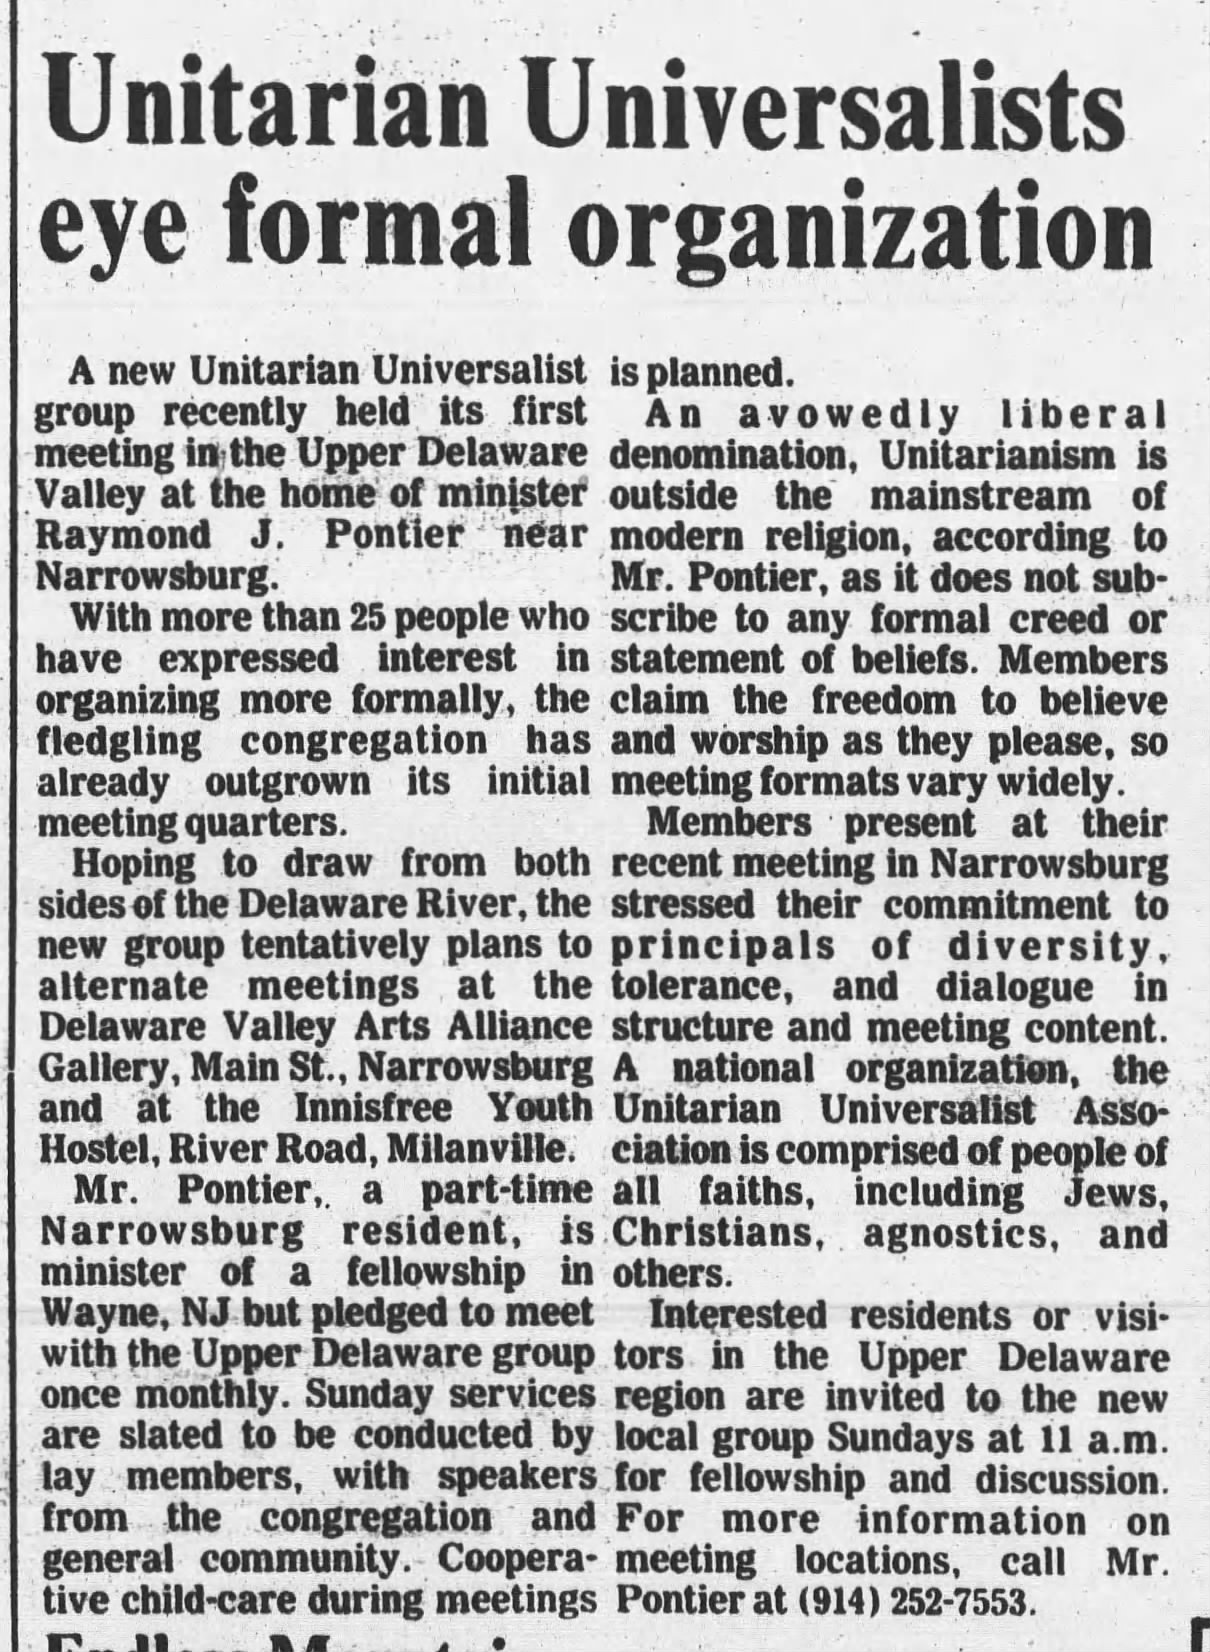 Unitarian Unitersalists eye formal organization